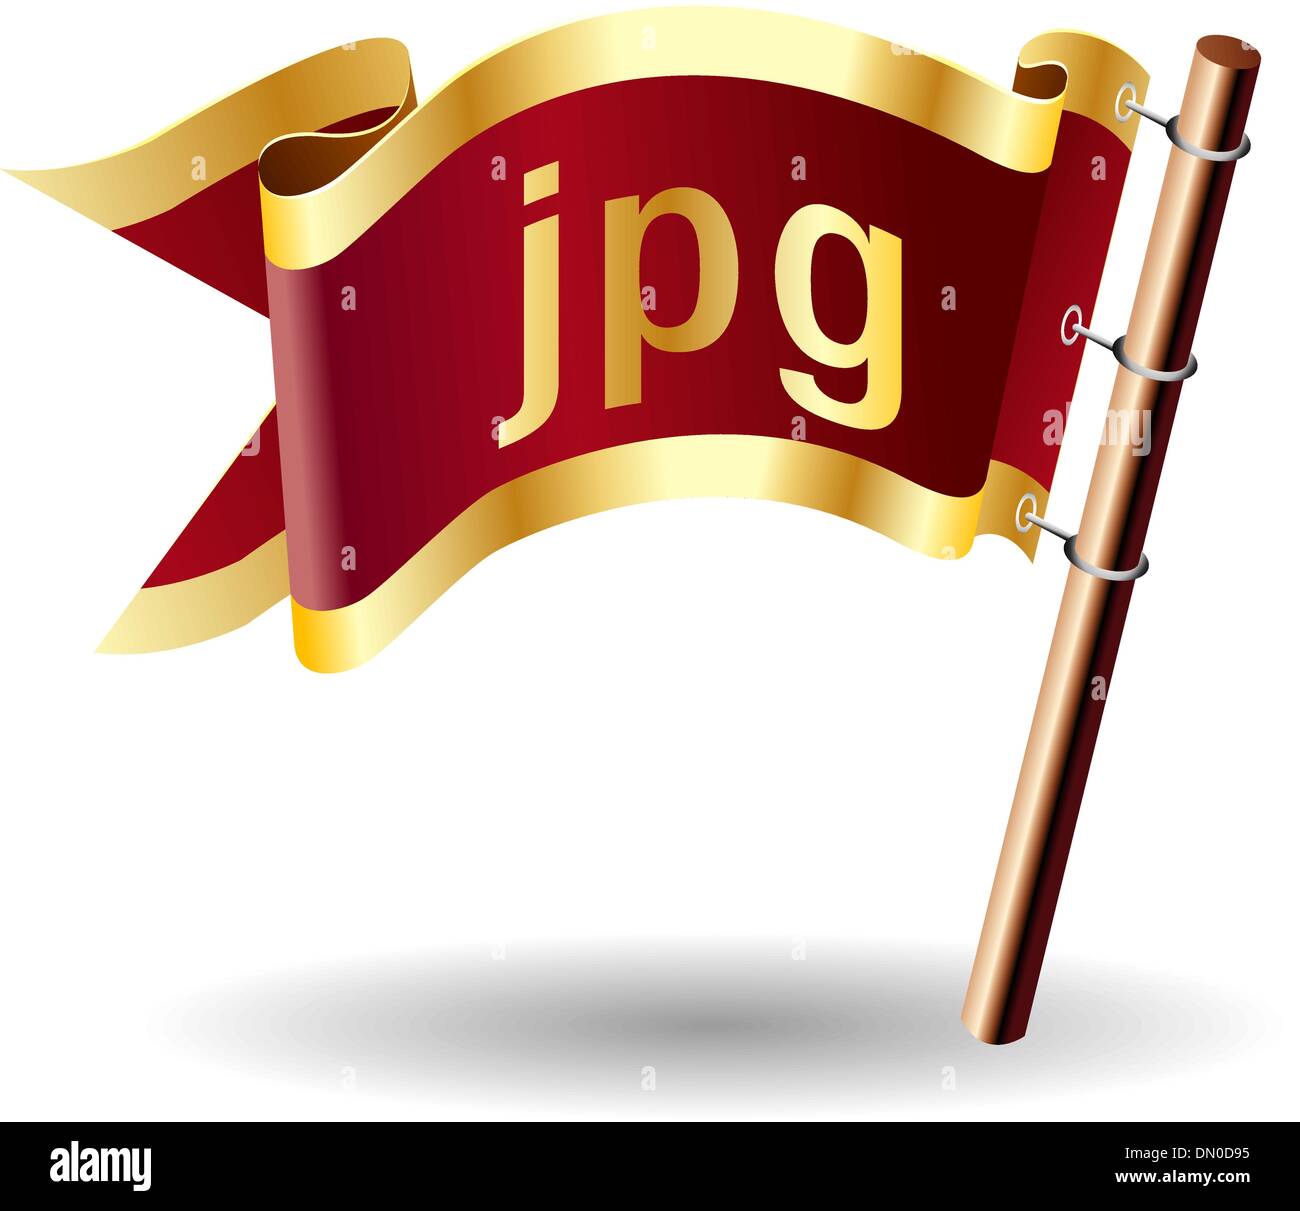 JPG file type royal flag Stock Vector